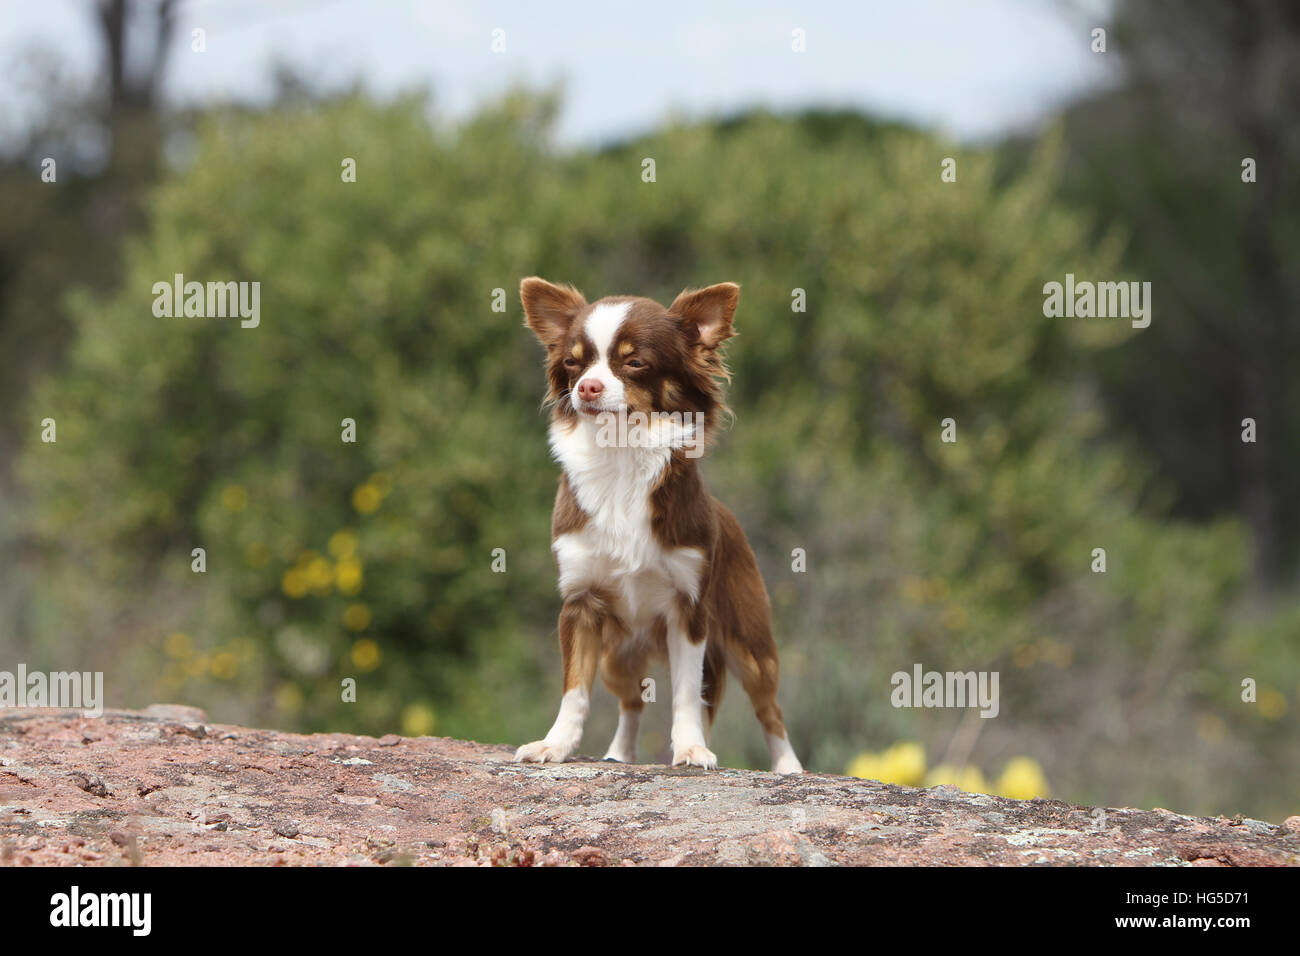 Chien Chihuahua poil long hot debout sur un rocher Banque D'Images